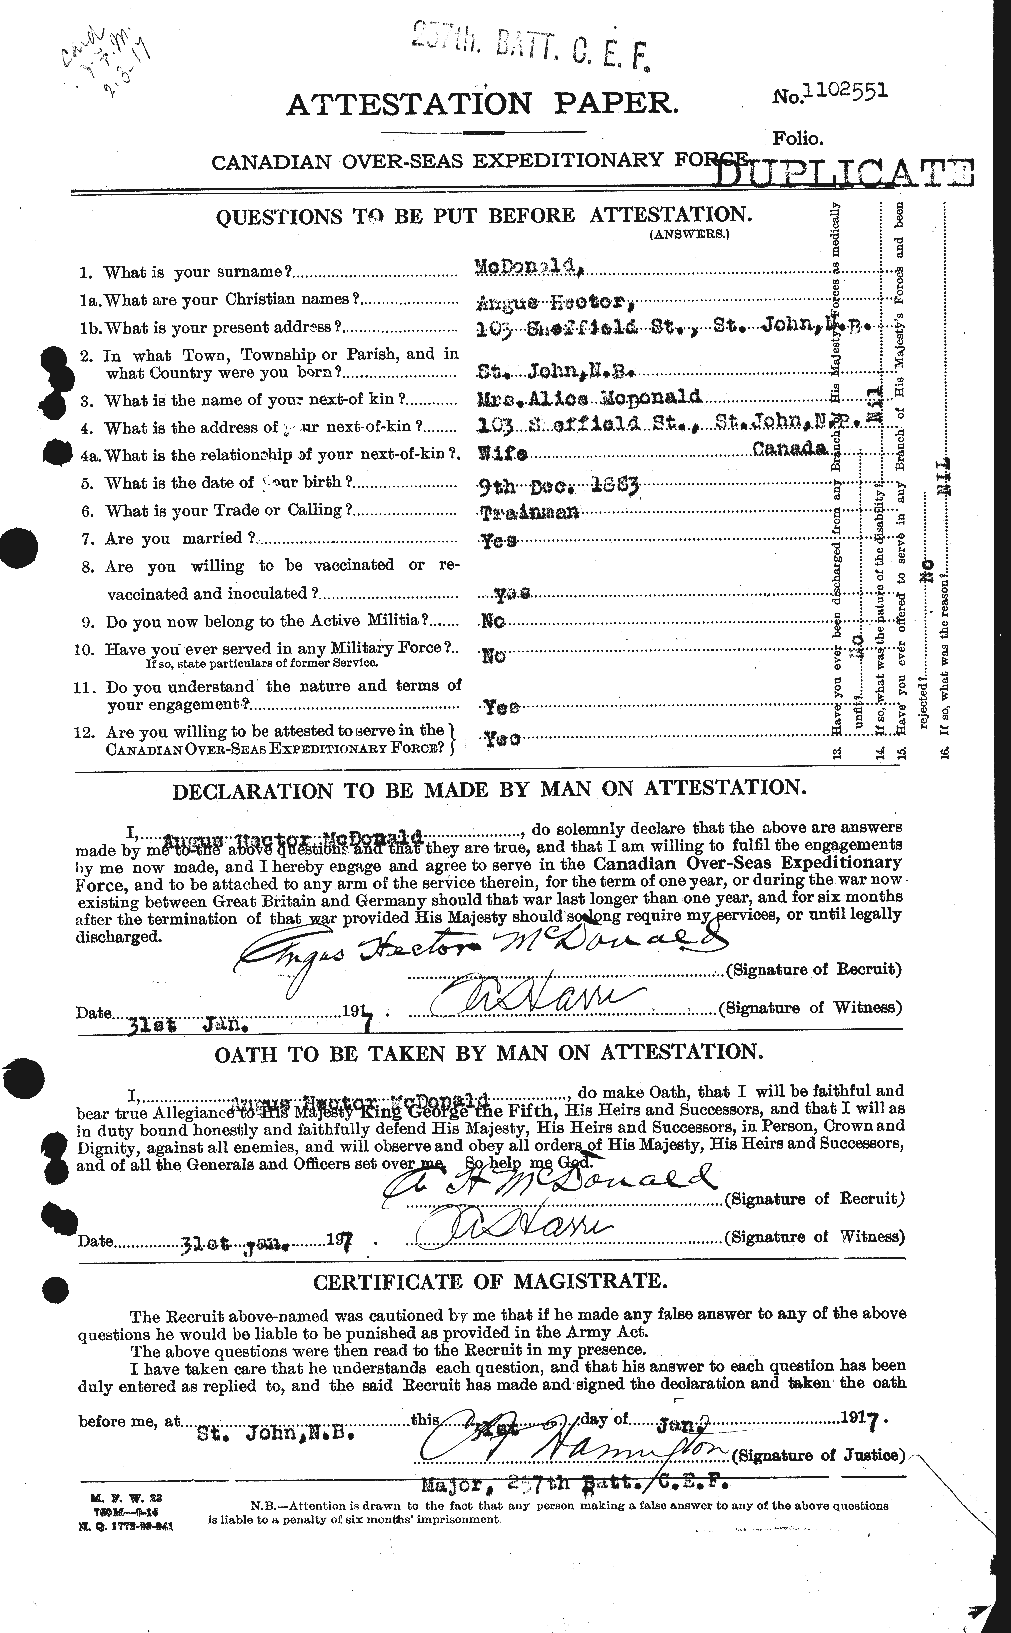 Dossiers du Personnel de la Première Guerre mondiale - CEC 137111a